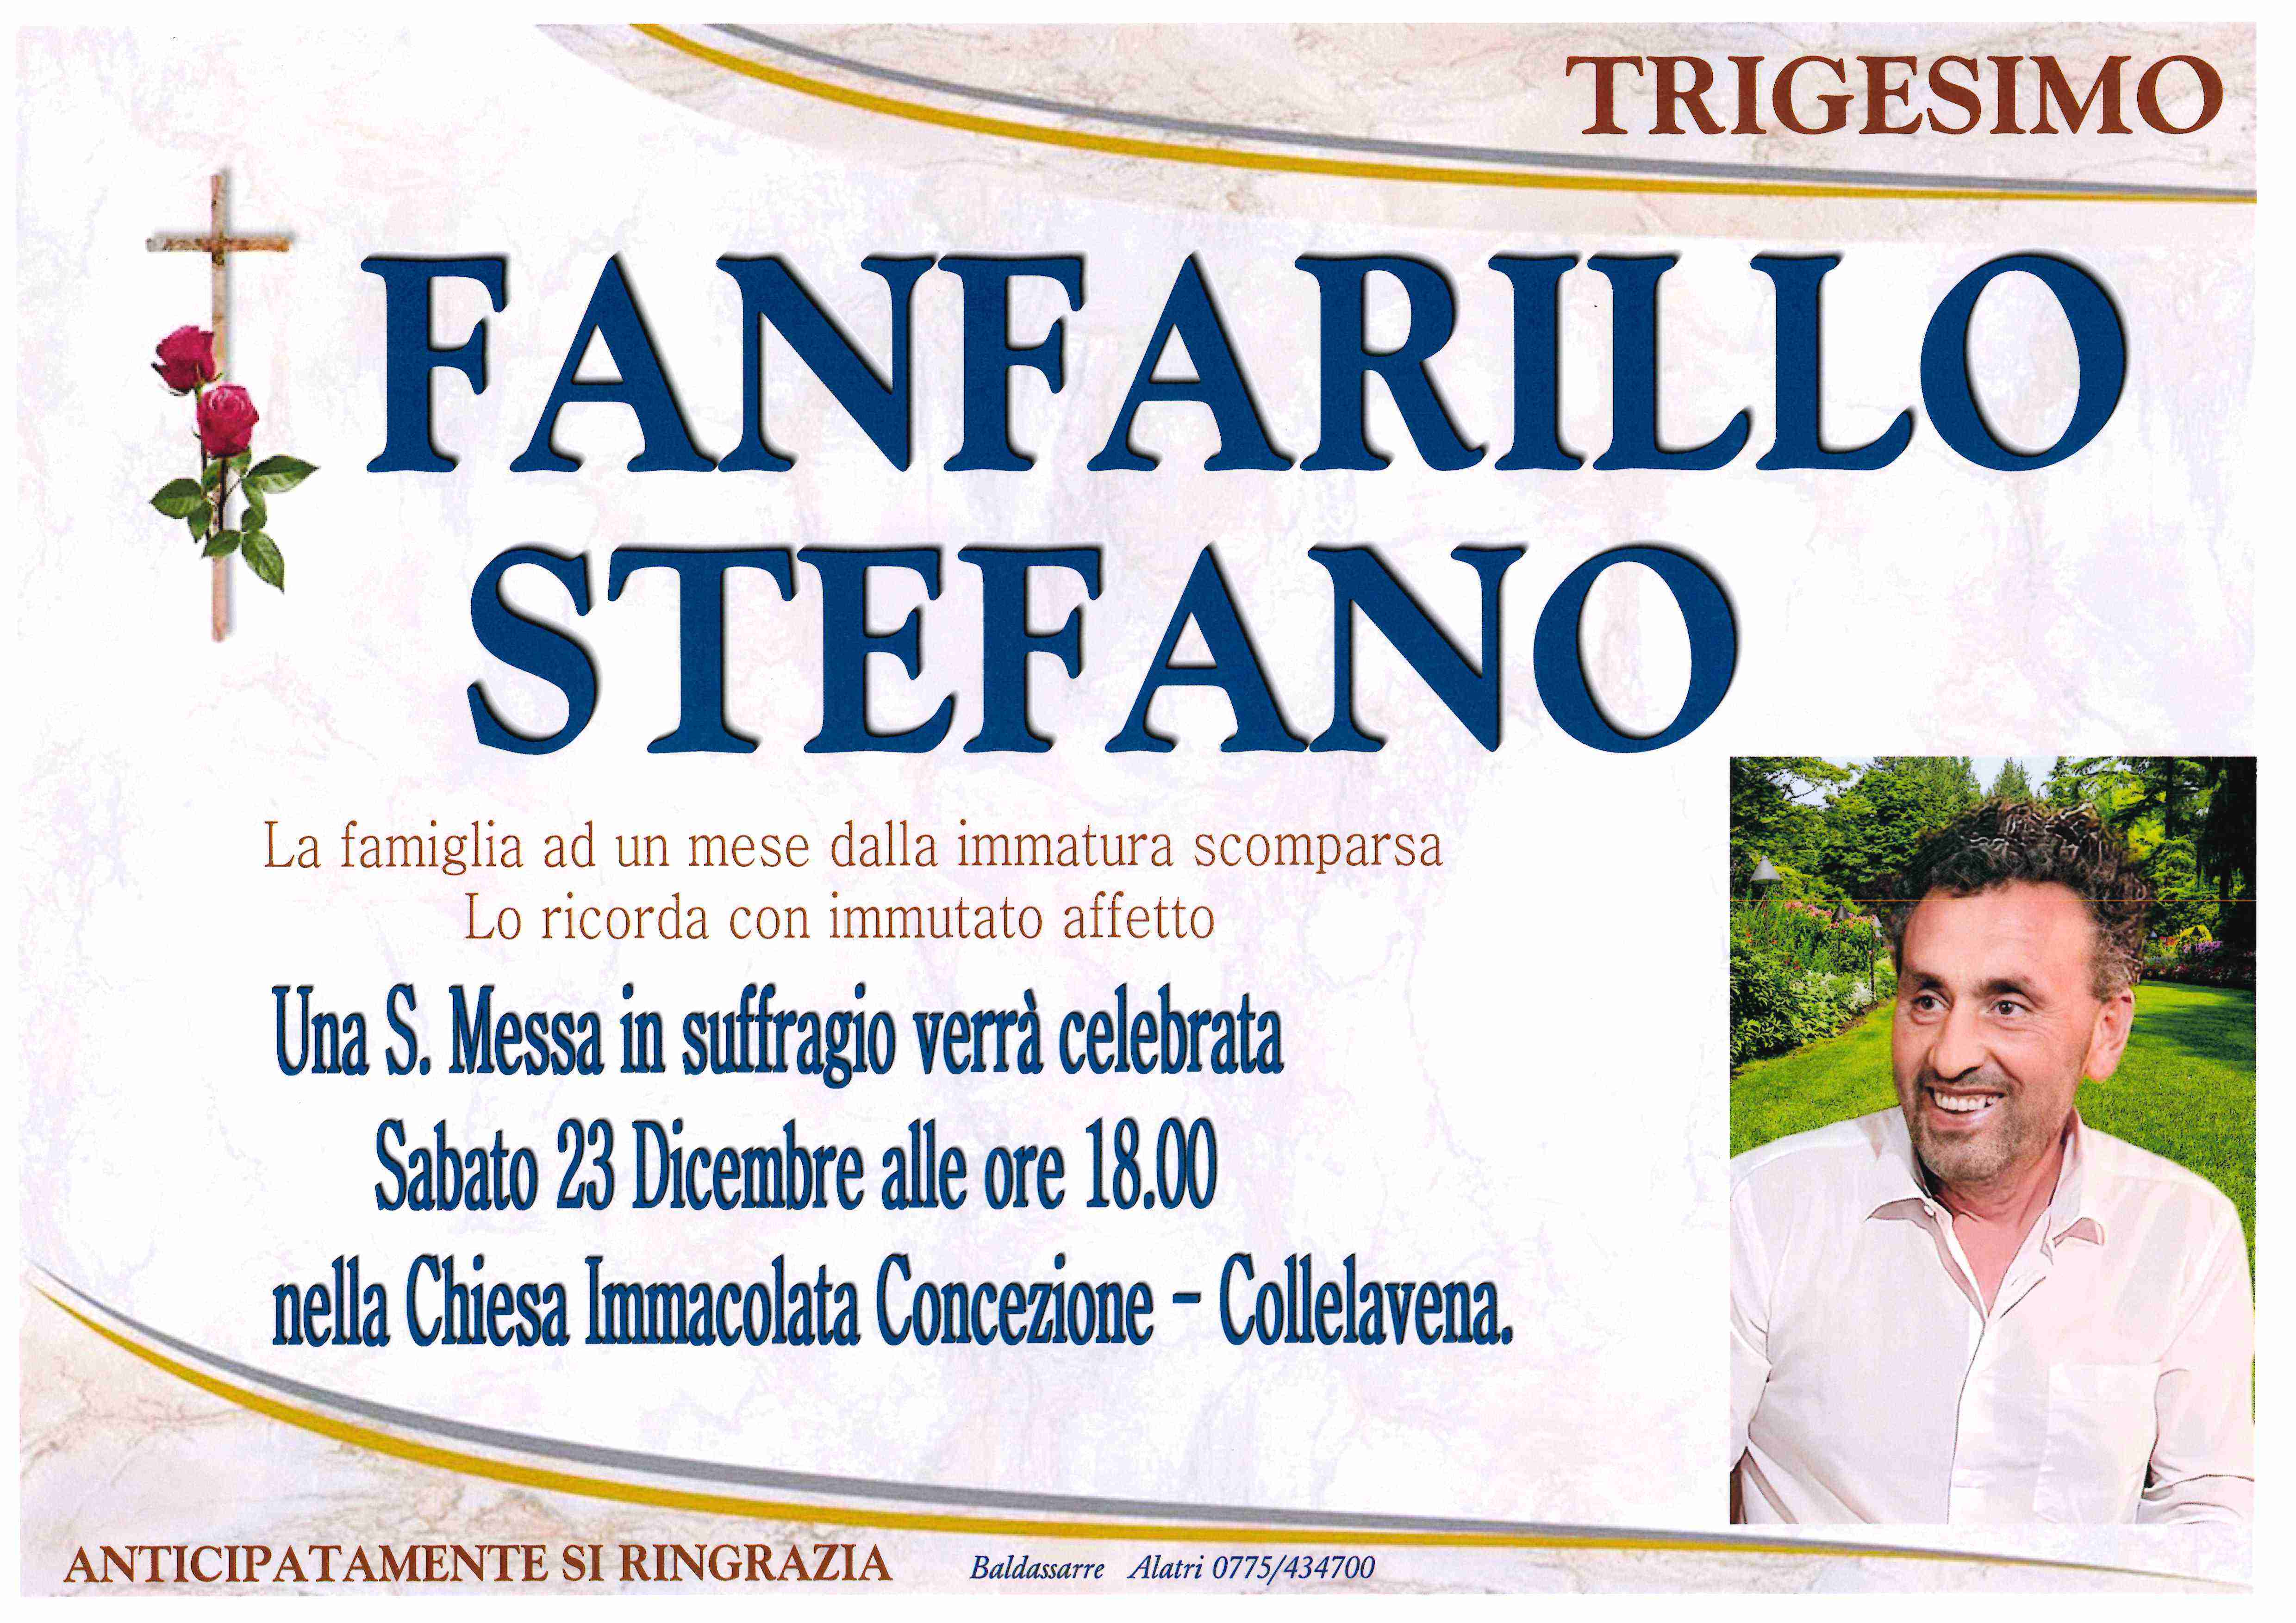 Stefano Fanfarillo